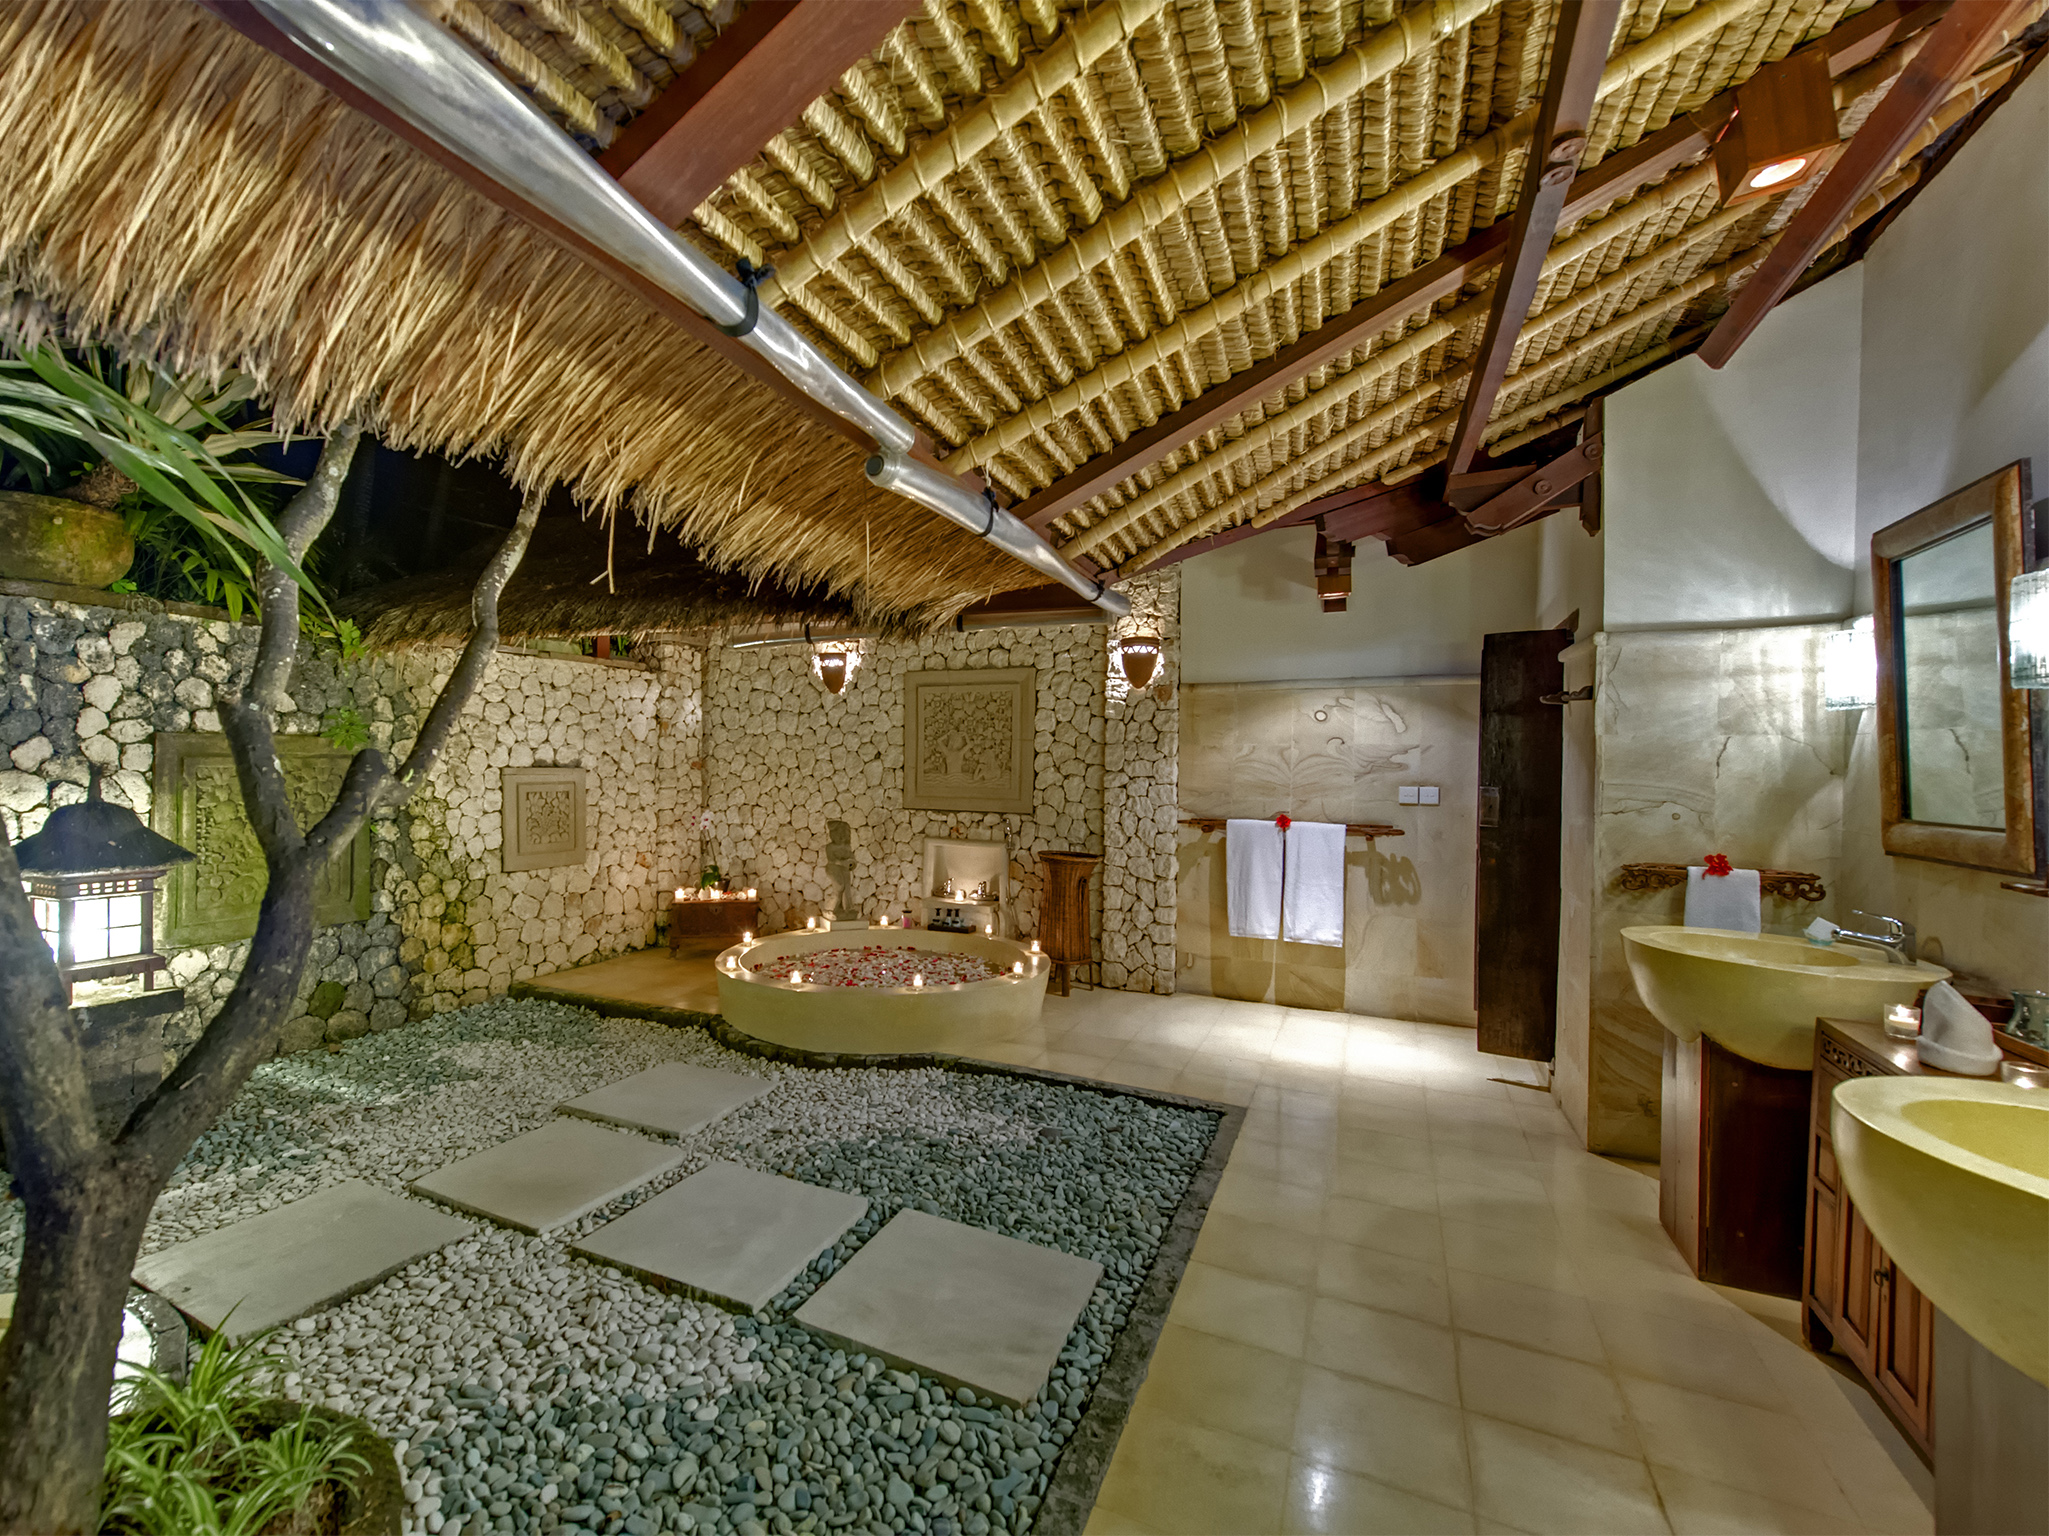 Villa Sungai Tinggi - Master bathroom at night - Sungai Tinggi Beach Villa, Canggu, Bali